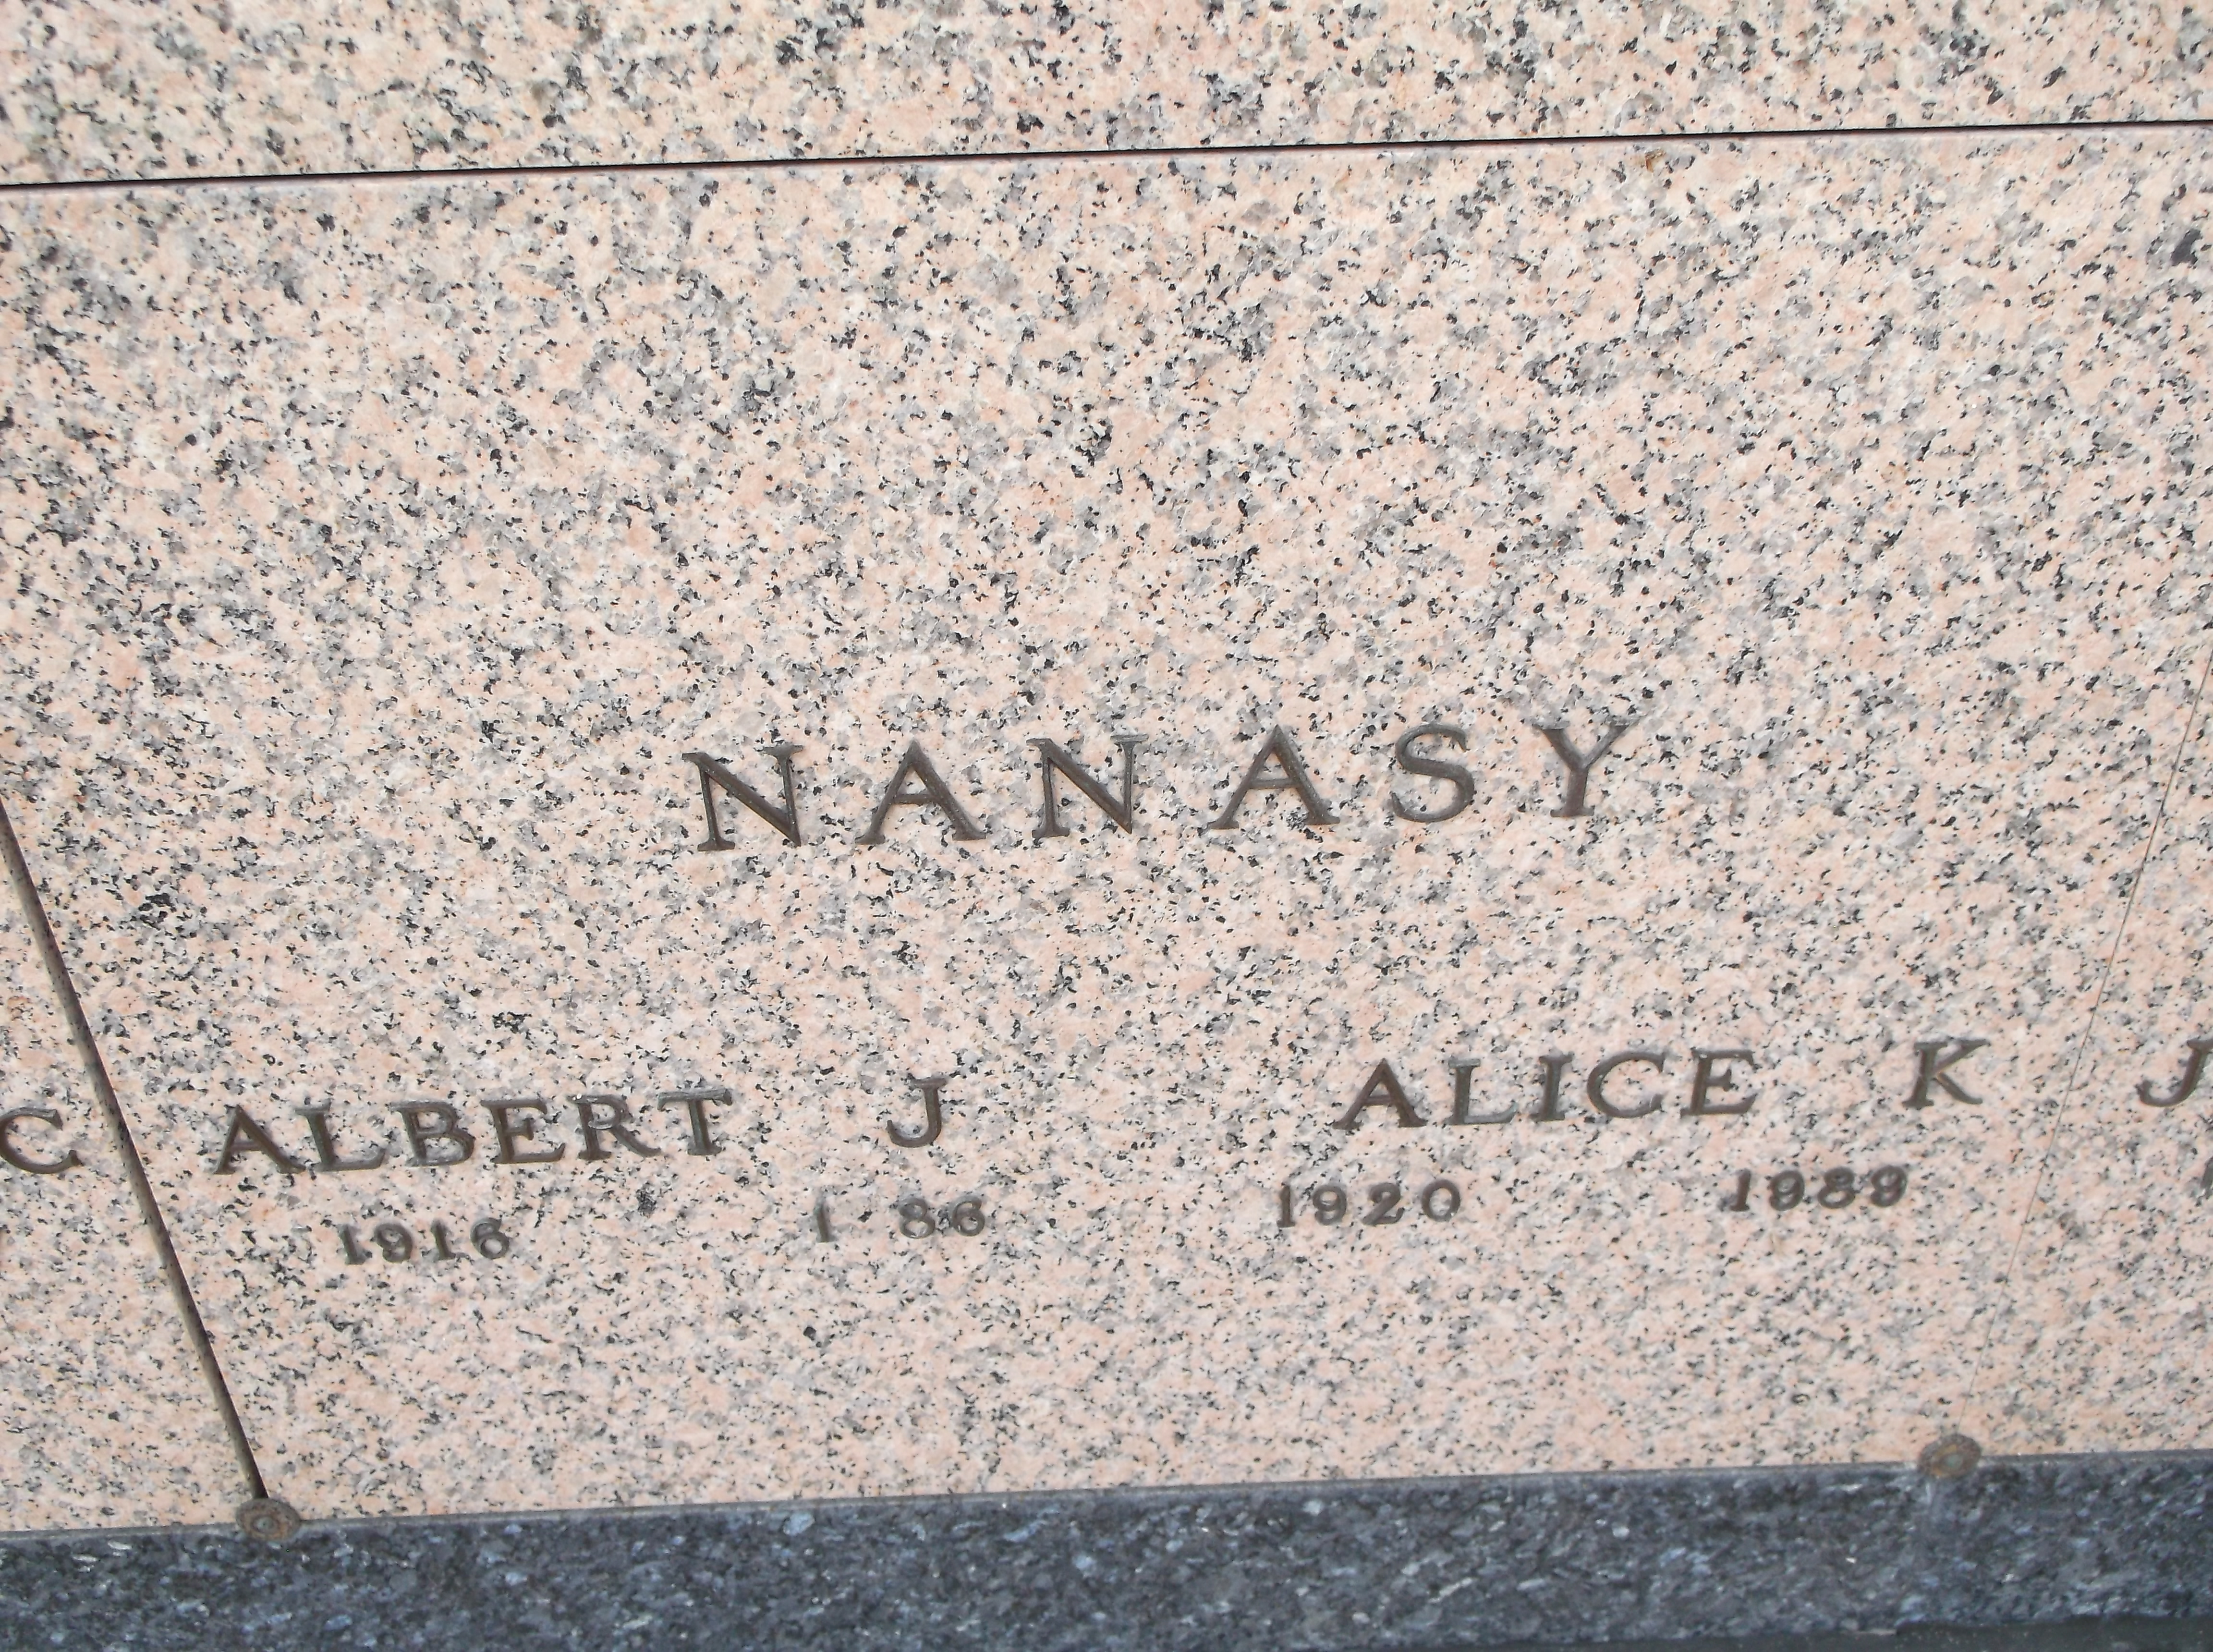 Alice K Nanasy